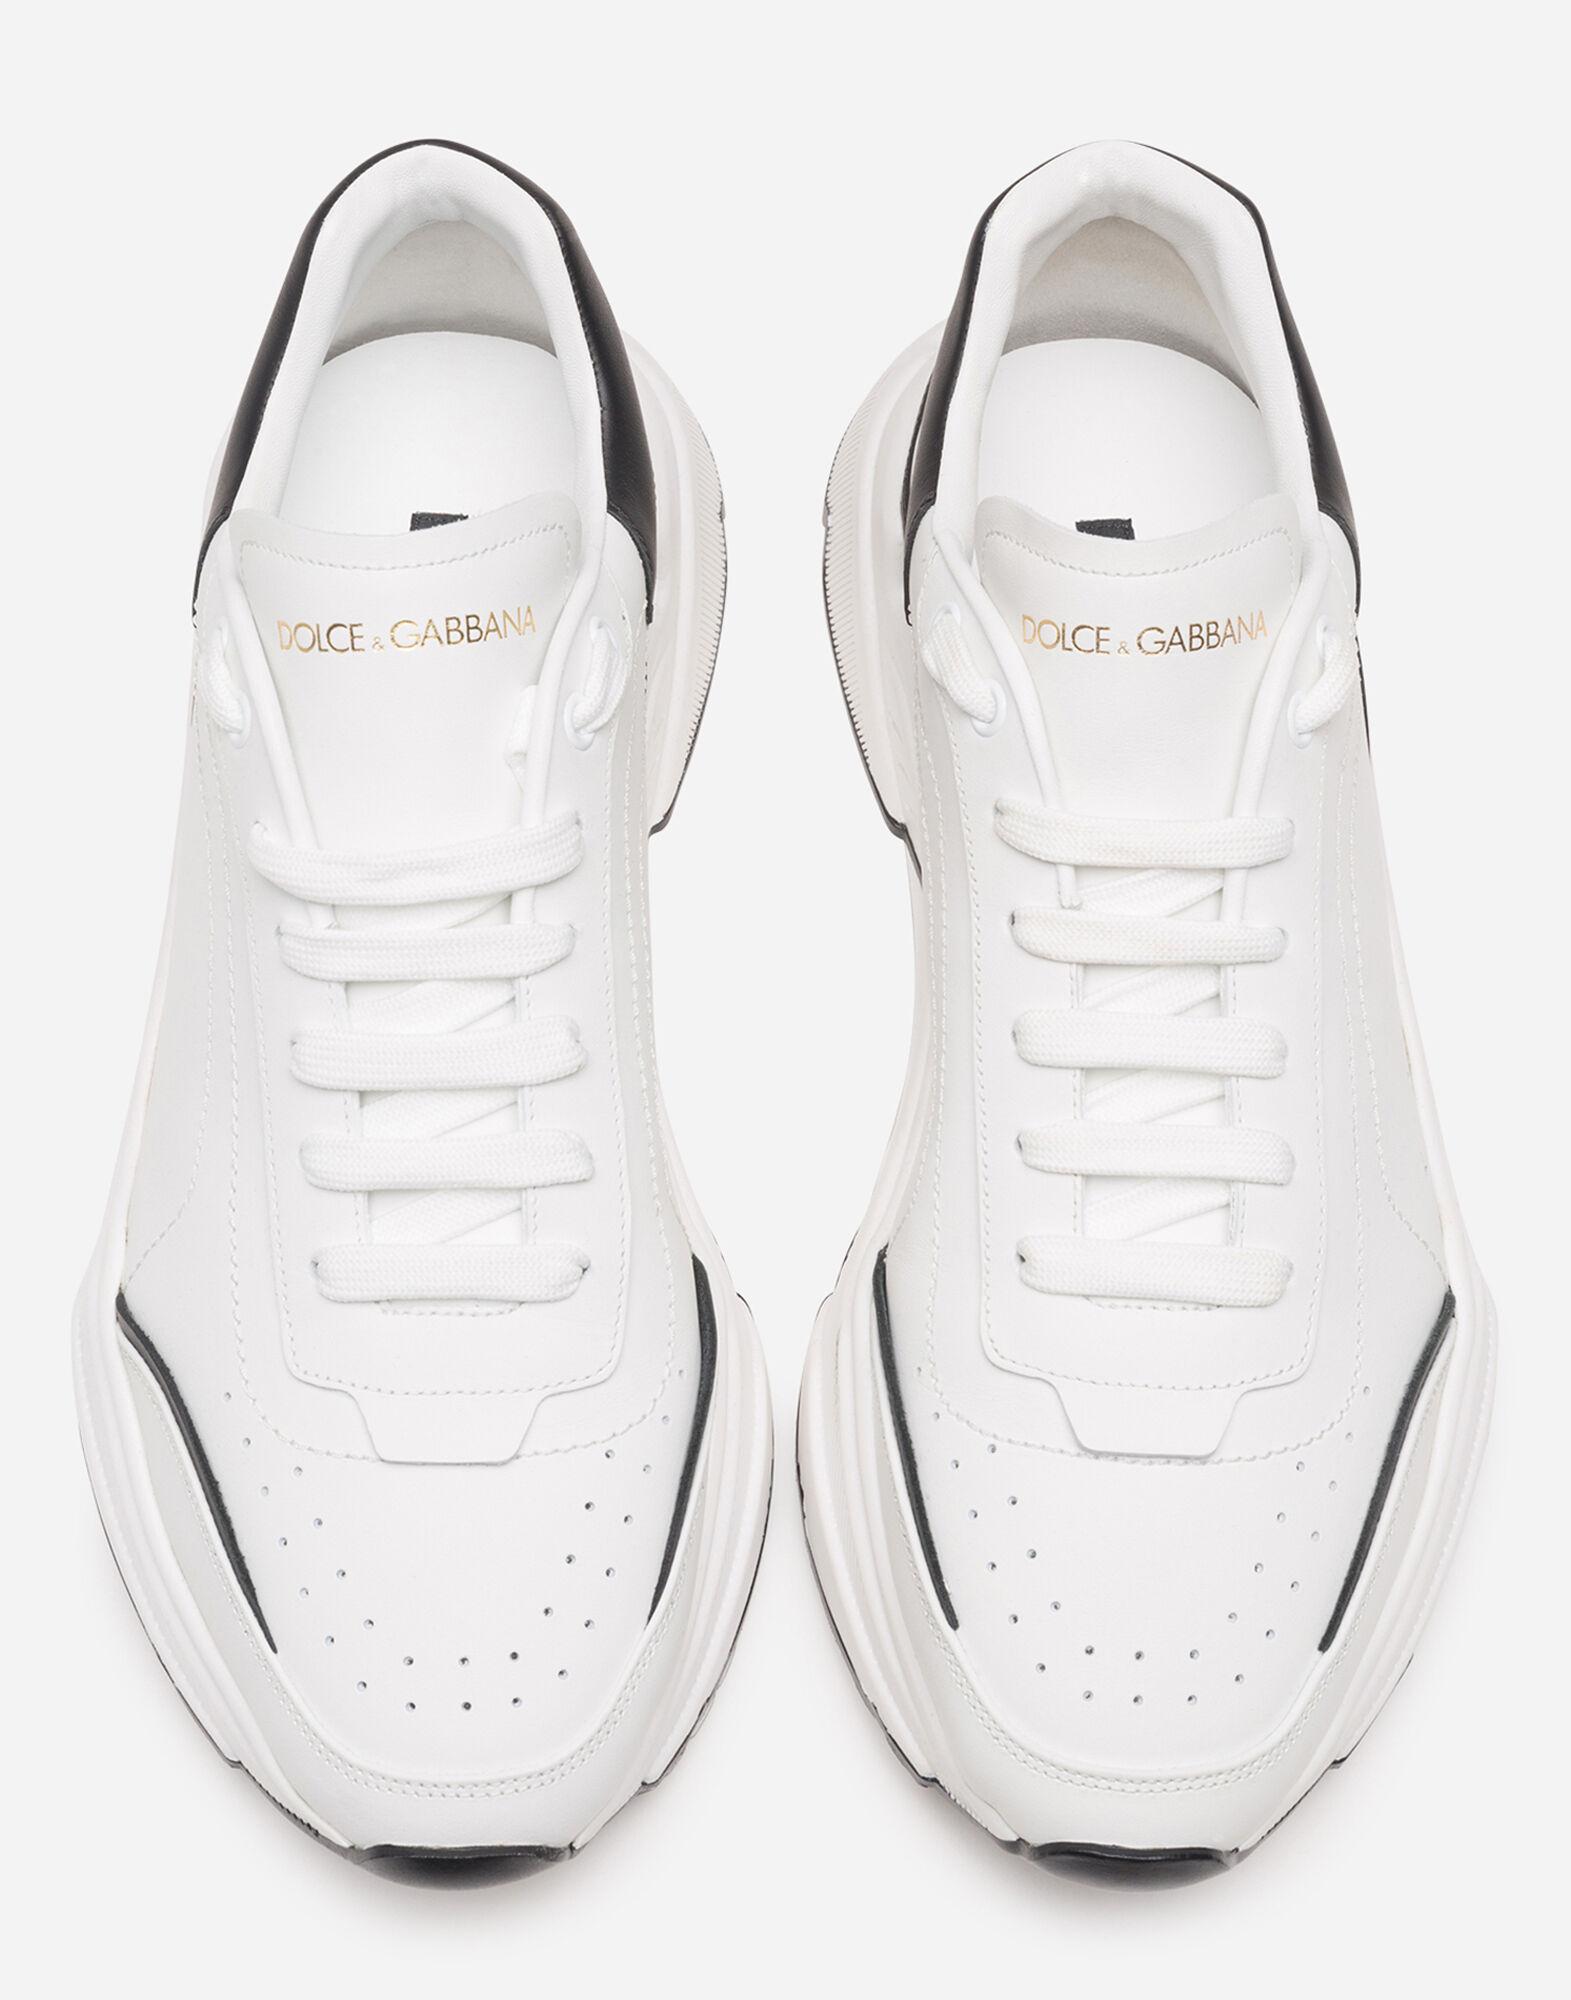 Dolce & Gabbana Daymaster Sneakers In Nappa Calfskin in White/Black ...